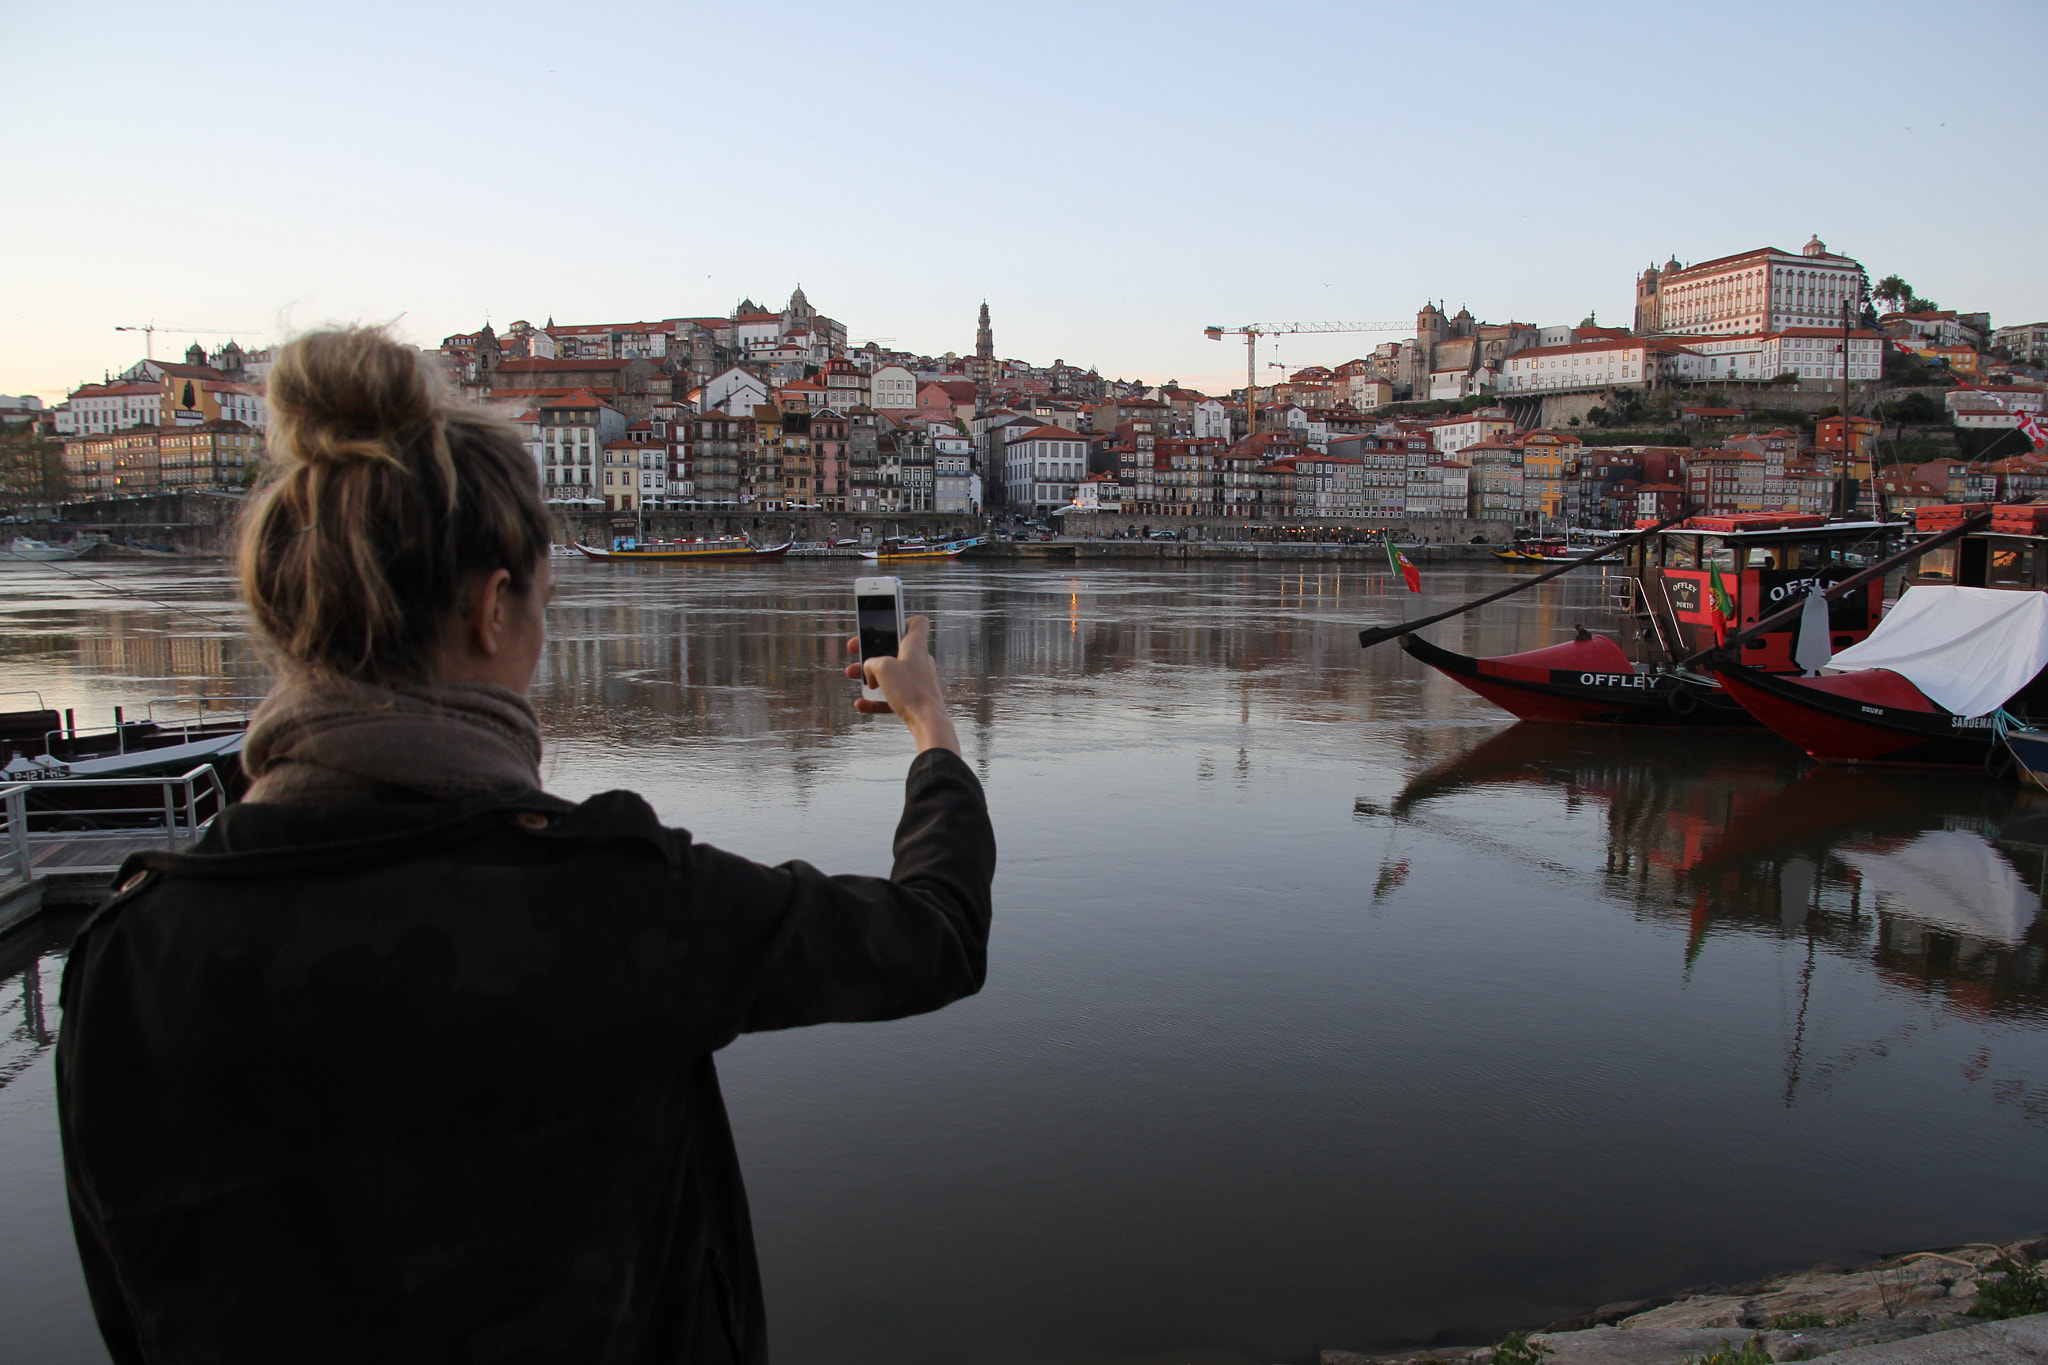 Canon EOS 60D + Tamron 16-300mm F3.5-6.3 Di II VC PZD Macro sample photo. Porto and douro river photography